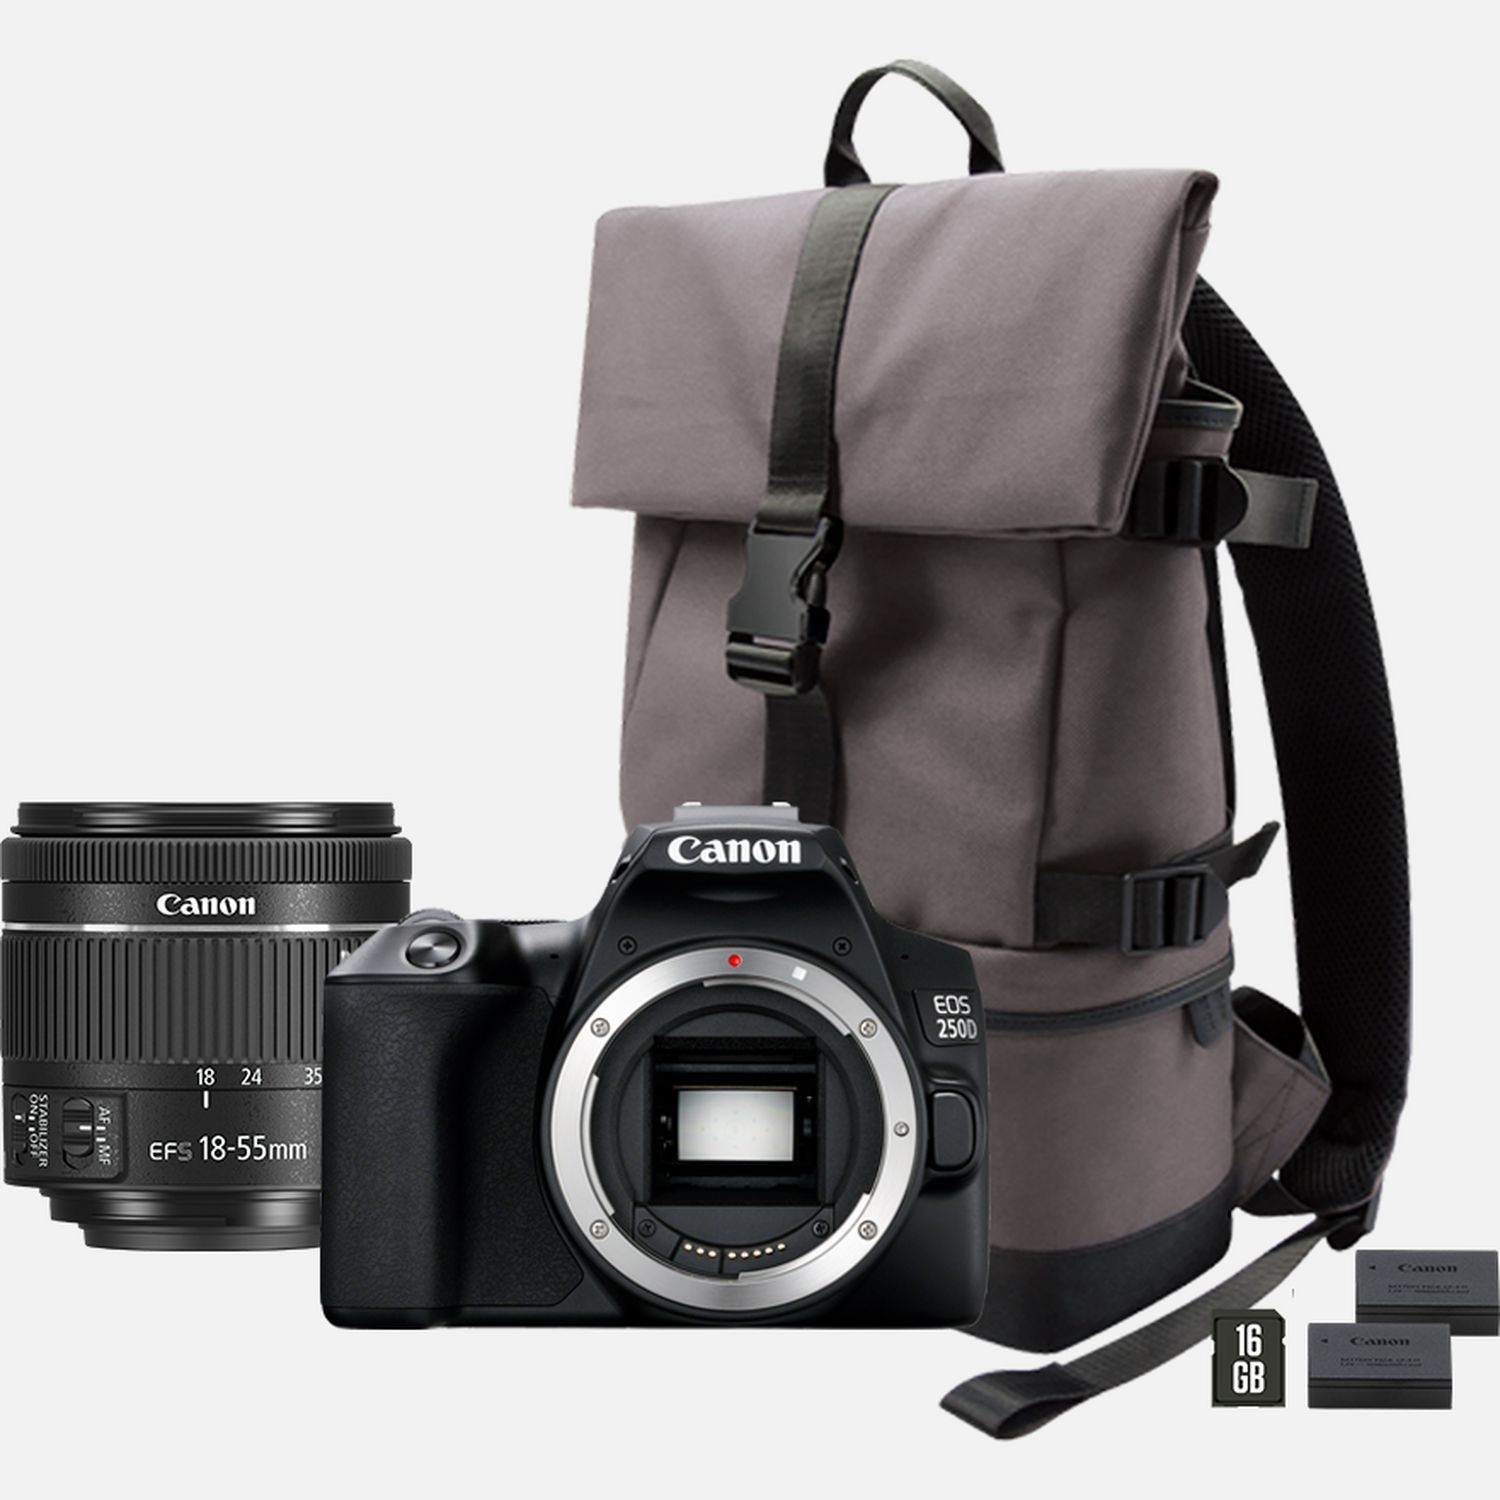 Image of Fotocamera Canon EOS 250D, Nero + Obiettivo EF-S 18-55mm f/4.0-5.6 IS STM + Batteria di ricambio